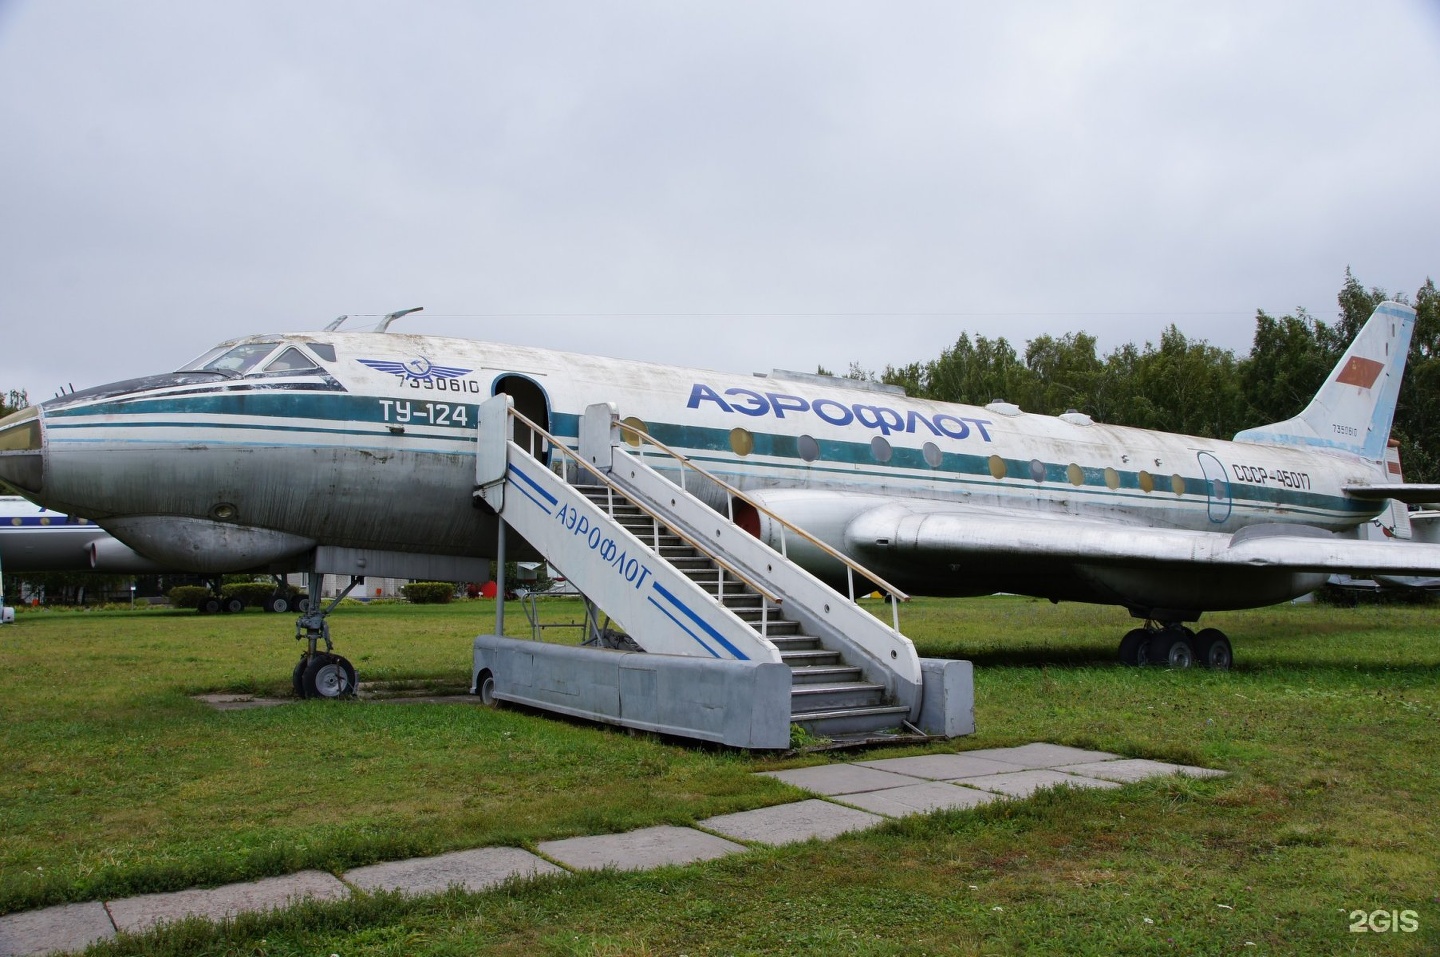 Музей гражданской авиации в ульяновске